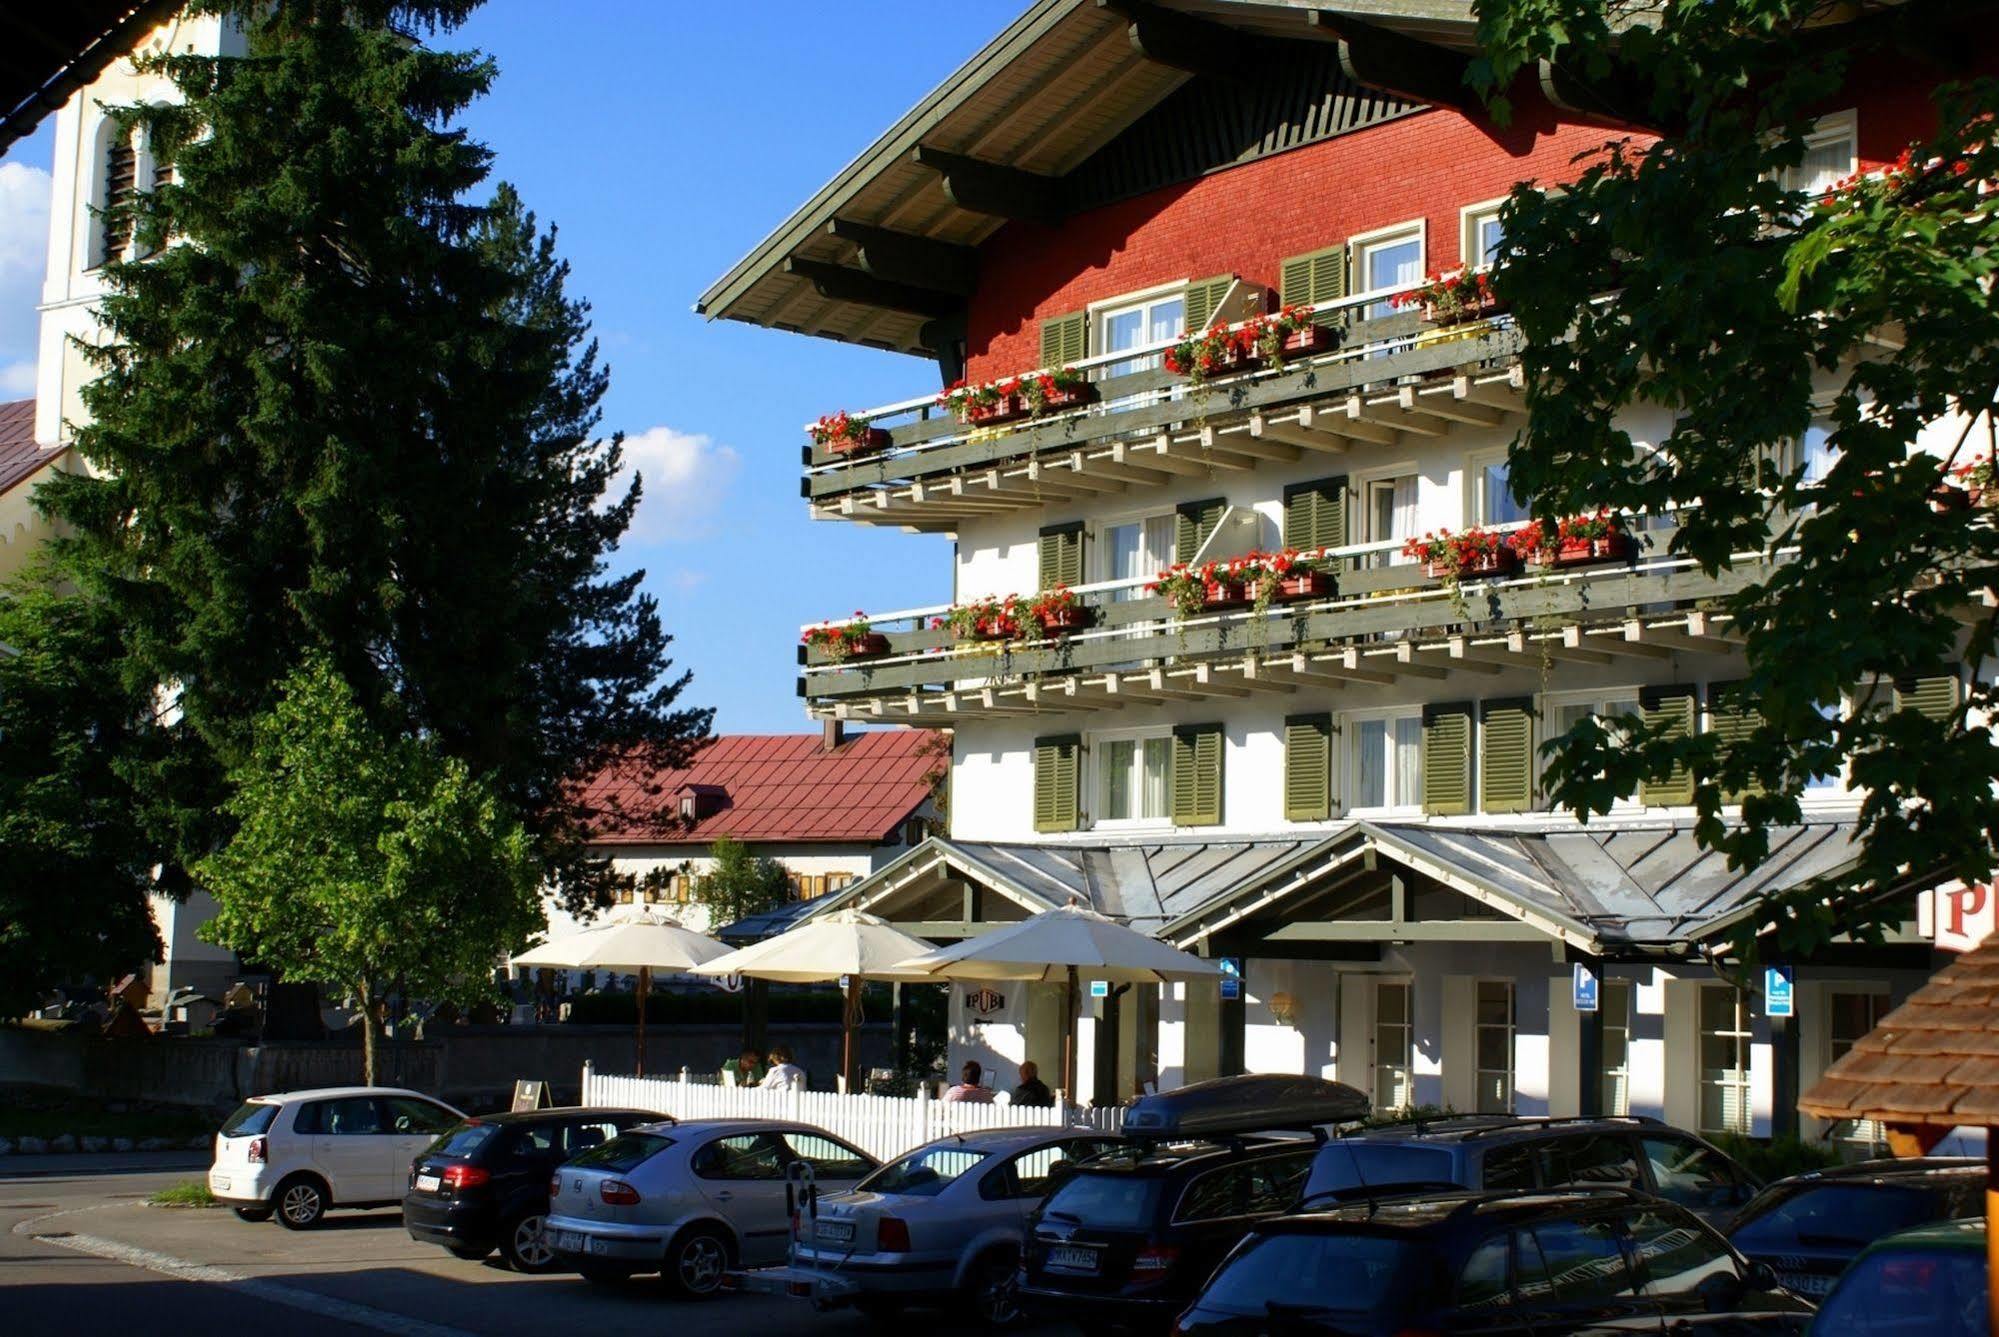 ريزلرن Hotel Riezler Hof المظهر الخارجي الصورة